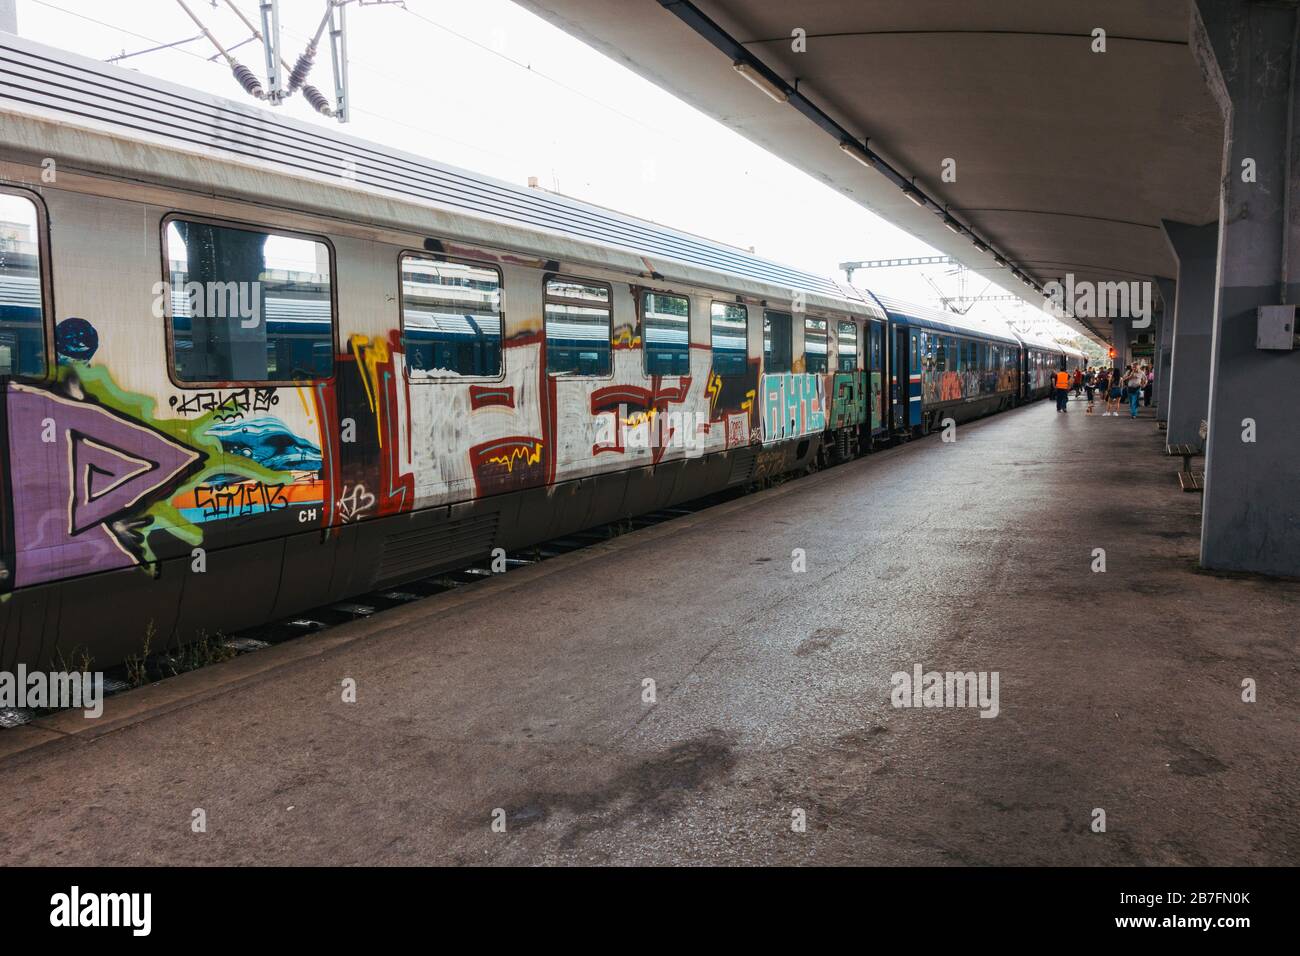 Carrozze di treni passeggeri coperte di graffiti alla stazione di Salonicco, Grecia, sulla linea ferroviaria ad alta velocità Atene-Salonicco Foto Stock